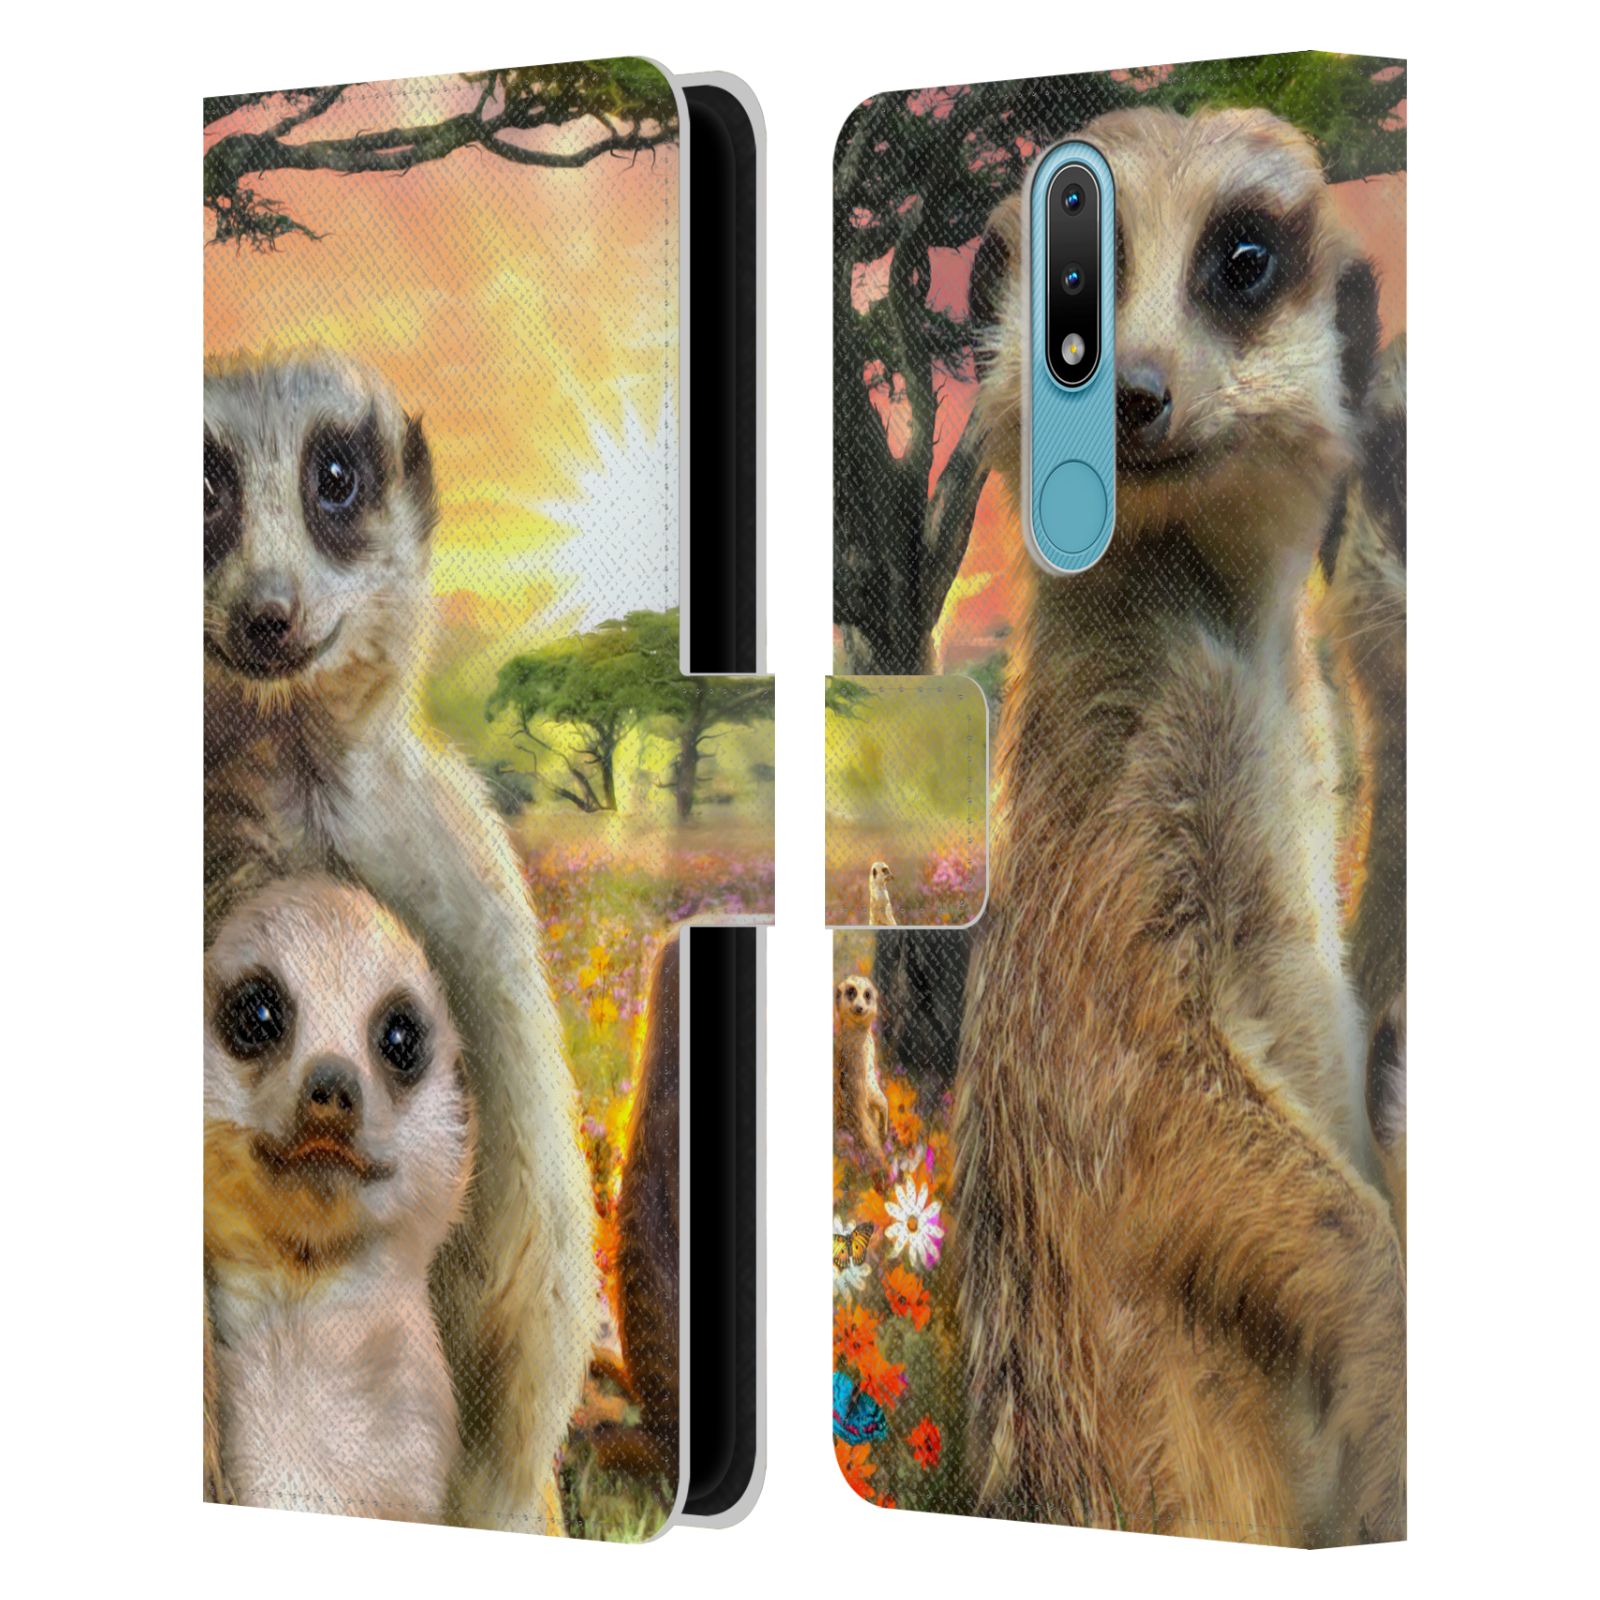 Pouzdro HEAD CASE na mobil Nokia 2.4  malé surikaty